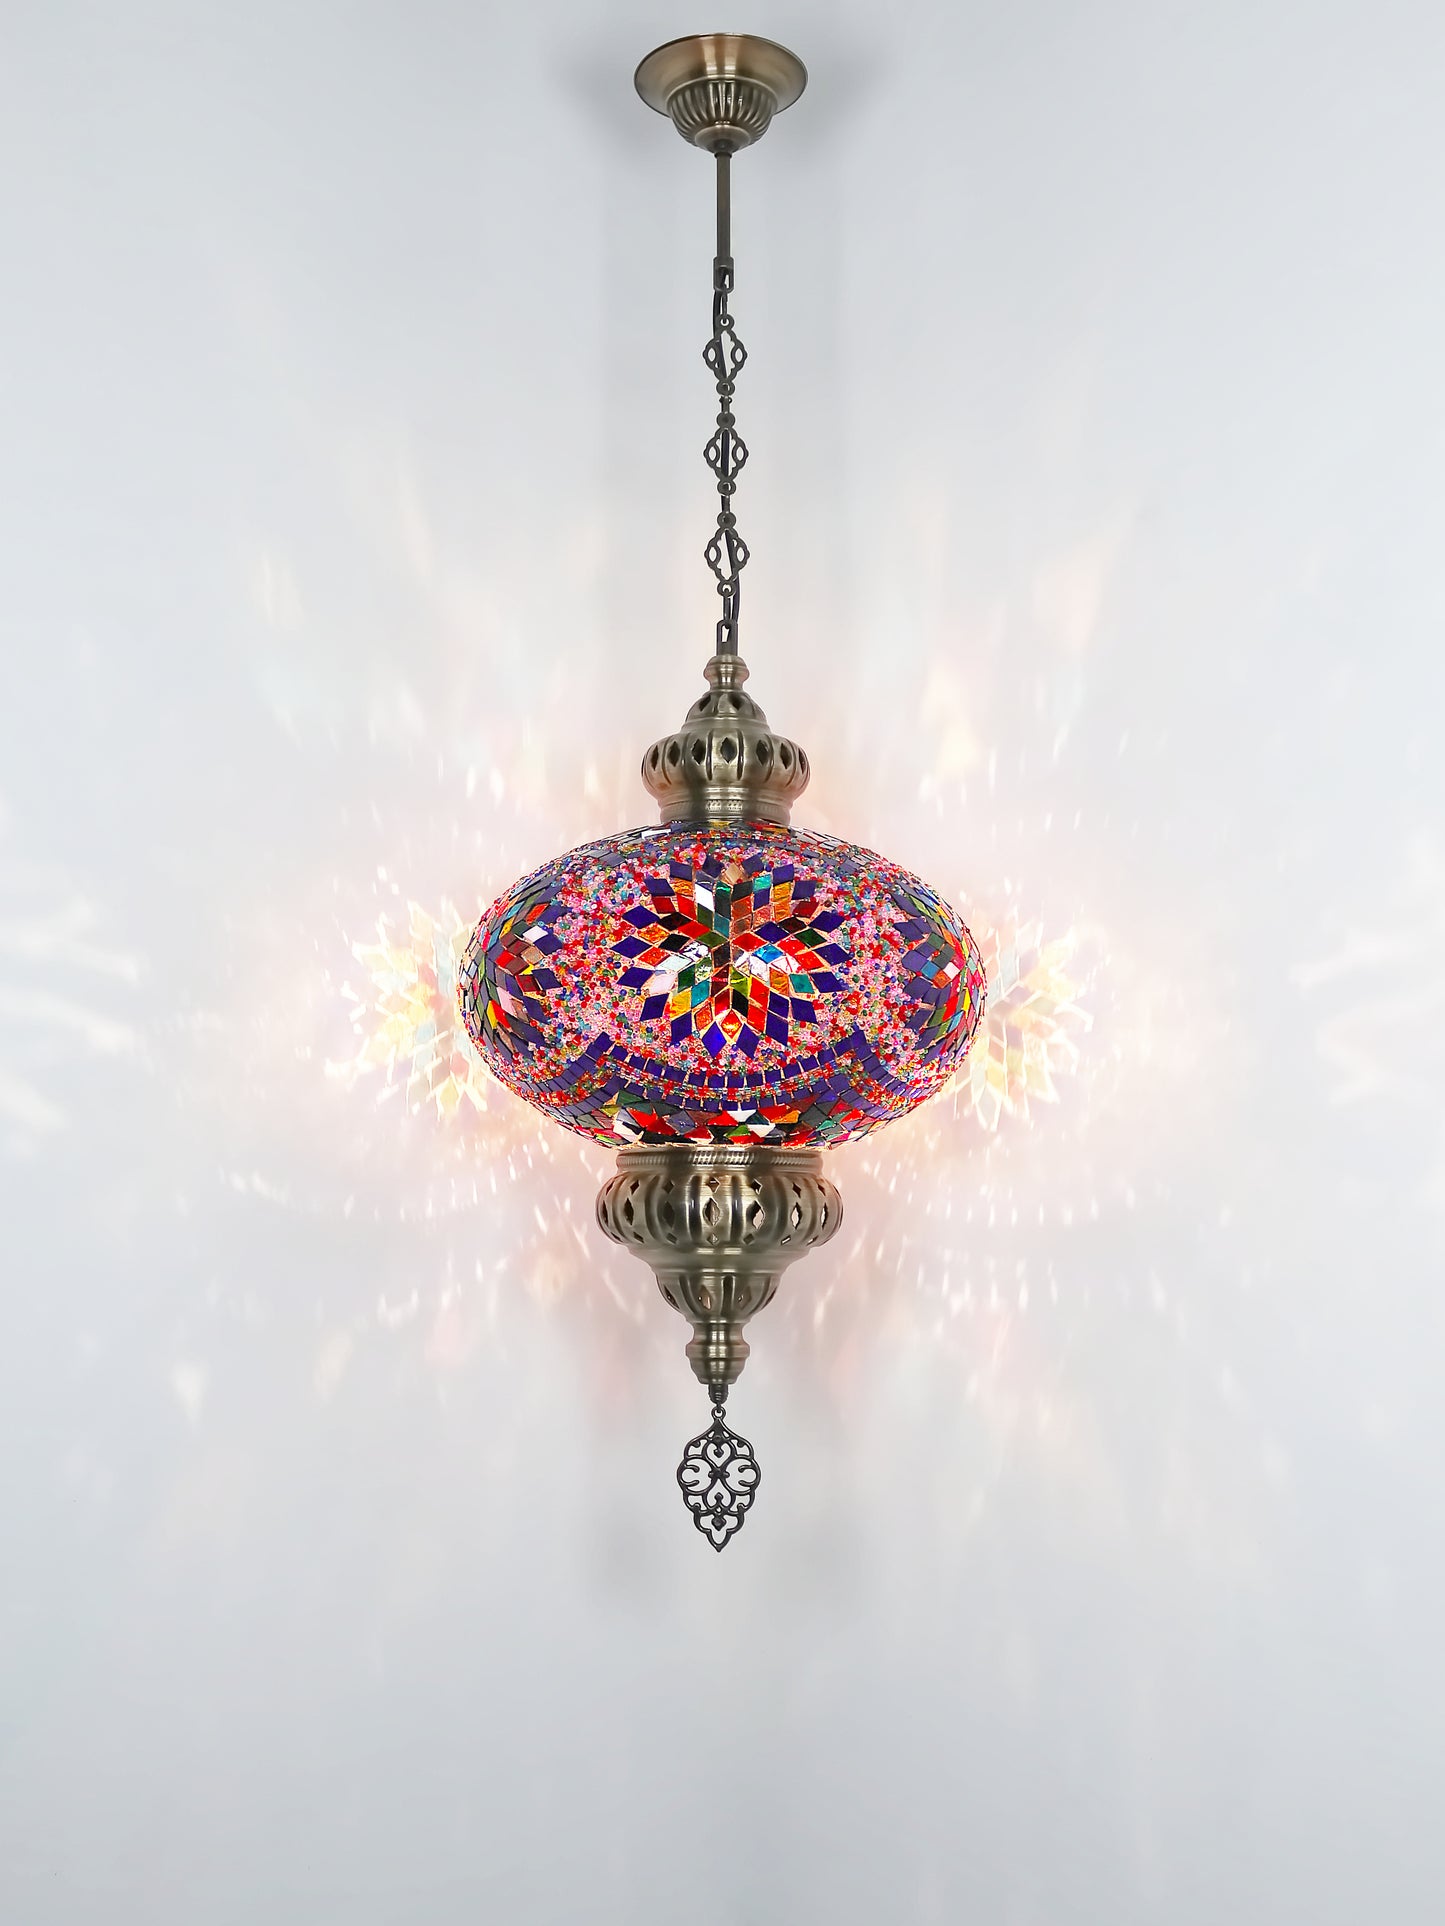 Mosaic Hanging Lamp 13.40'' Big globe